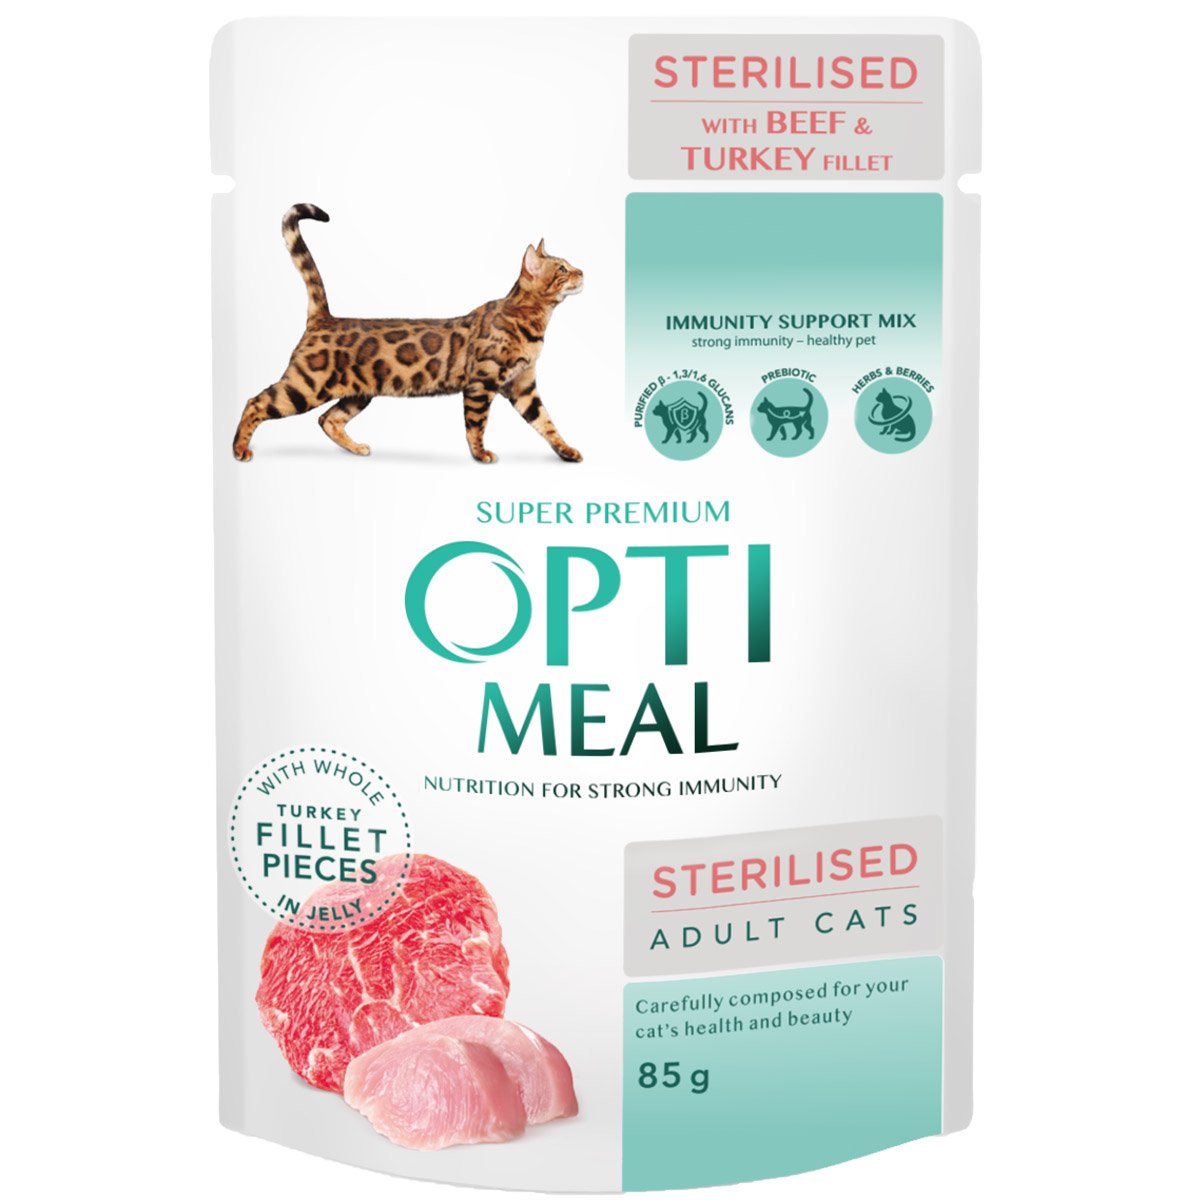 Вологий корм Optimeal для стерилізованих кішок та кастрованих котів, з яловичиною та філе індички в желе, 85 г - фото 1